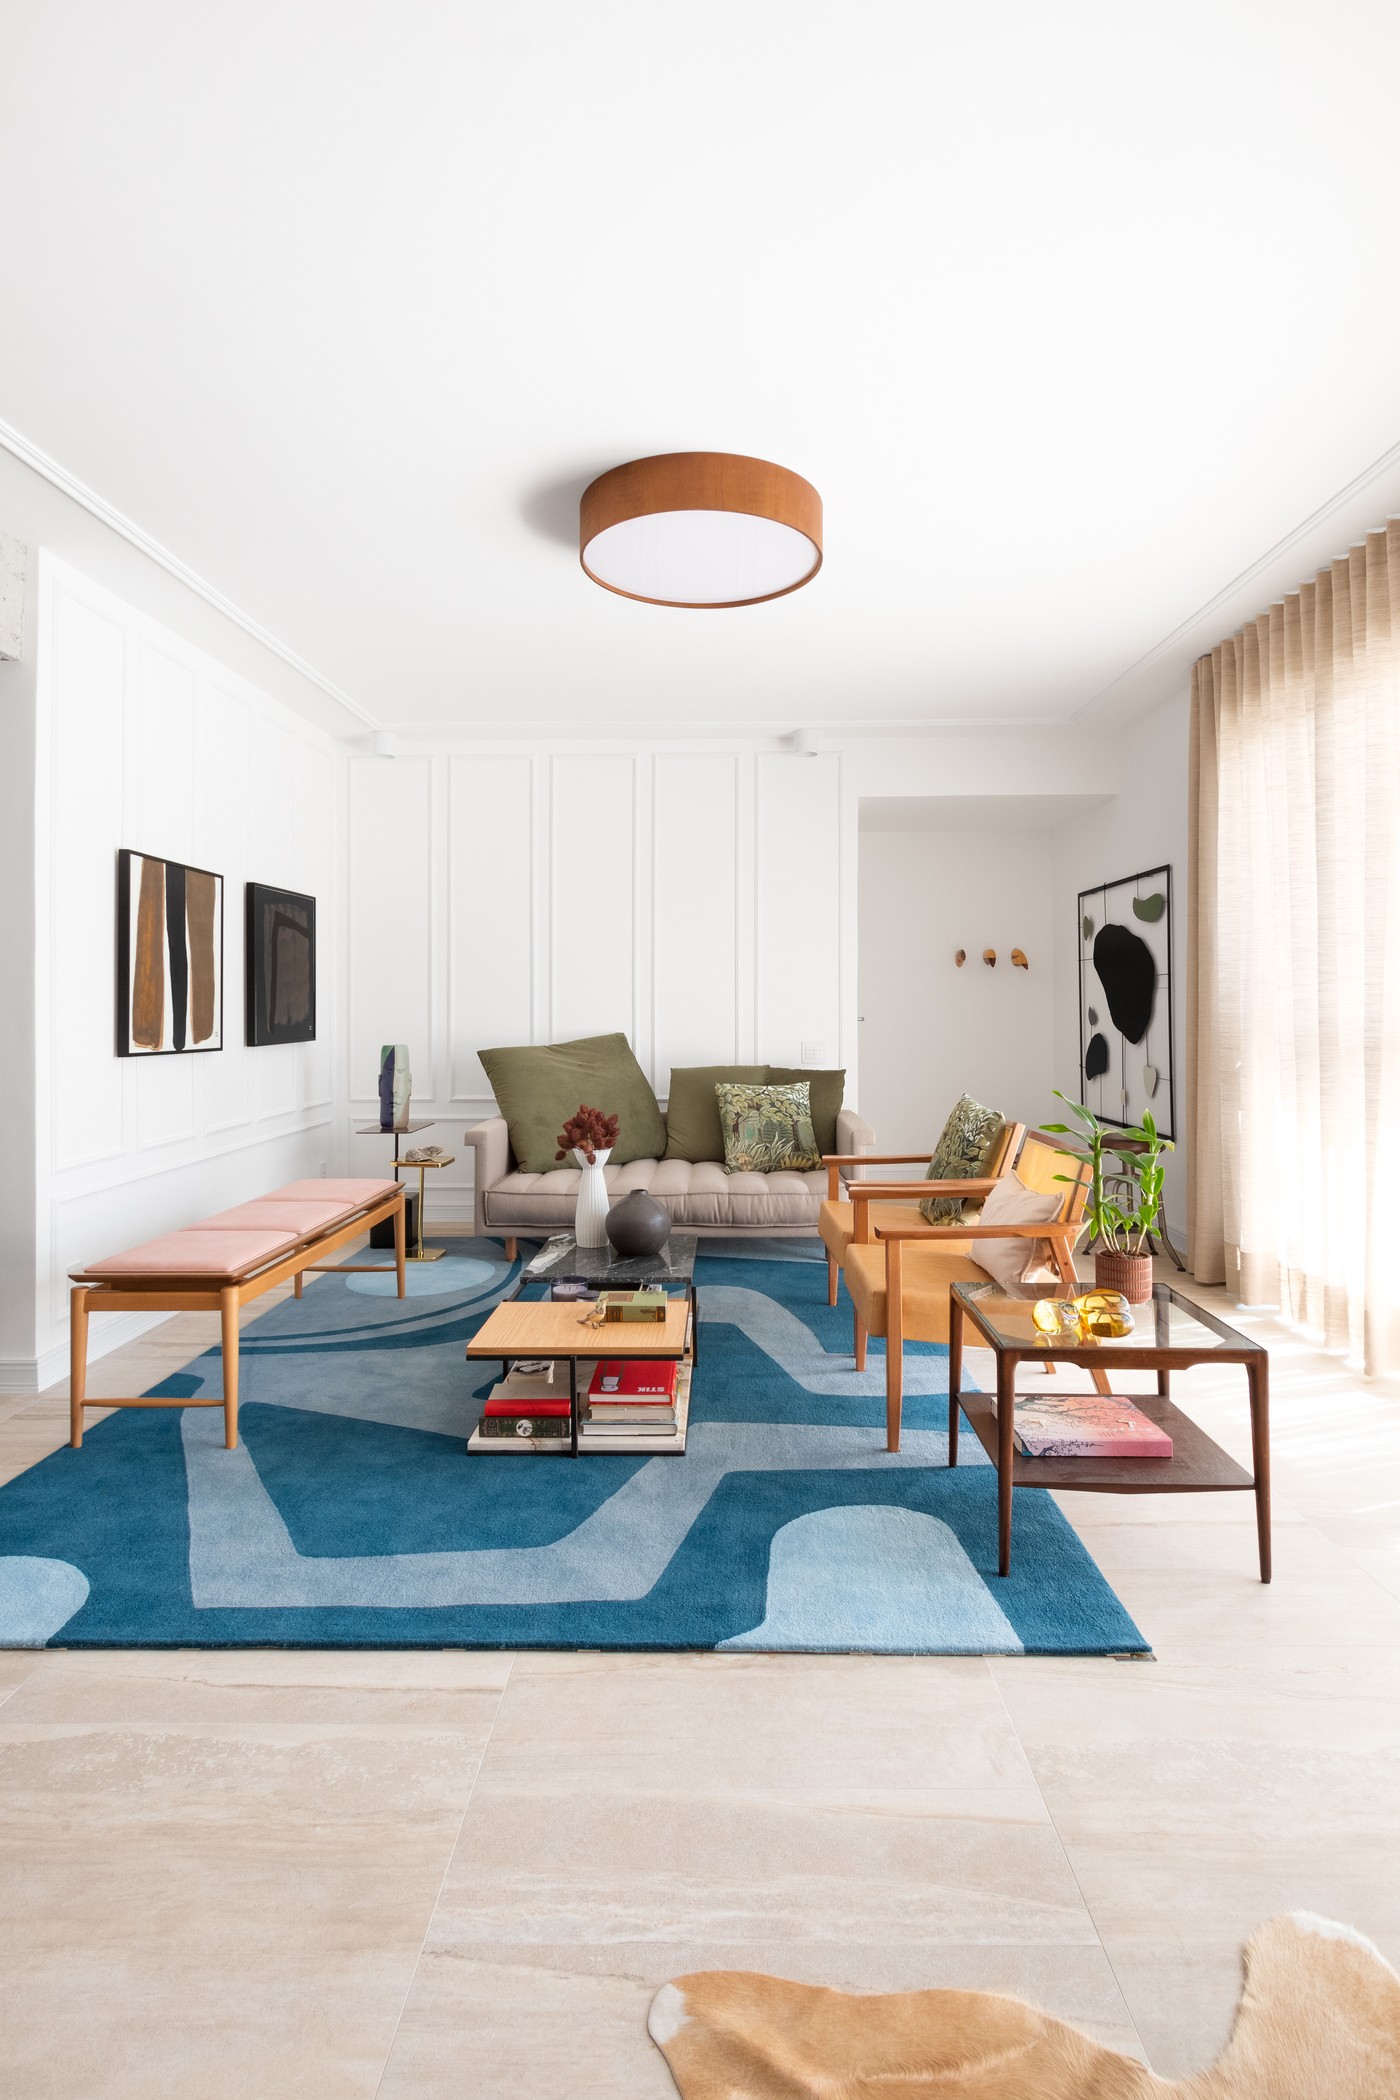 Décor do dia: salas de estar e jantar integradas com decoração atemporal e estruturas aparentes (Foto: Alexandre Disaro)